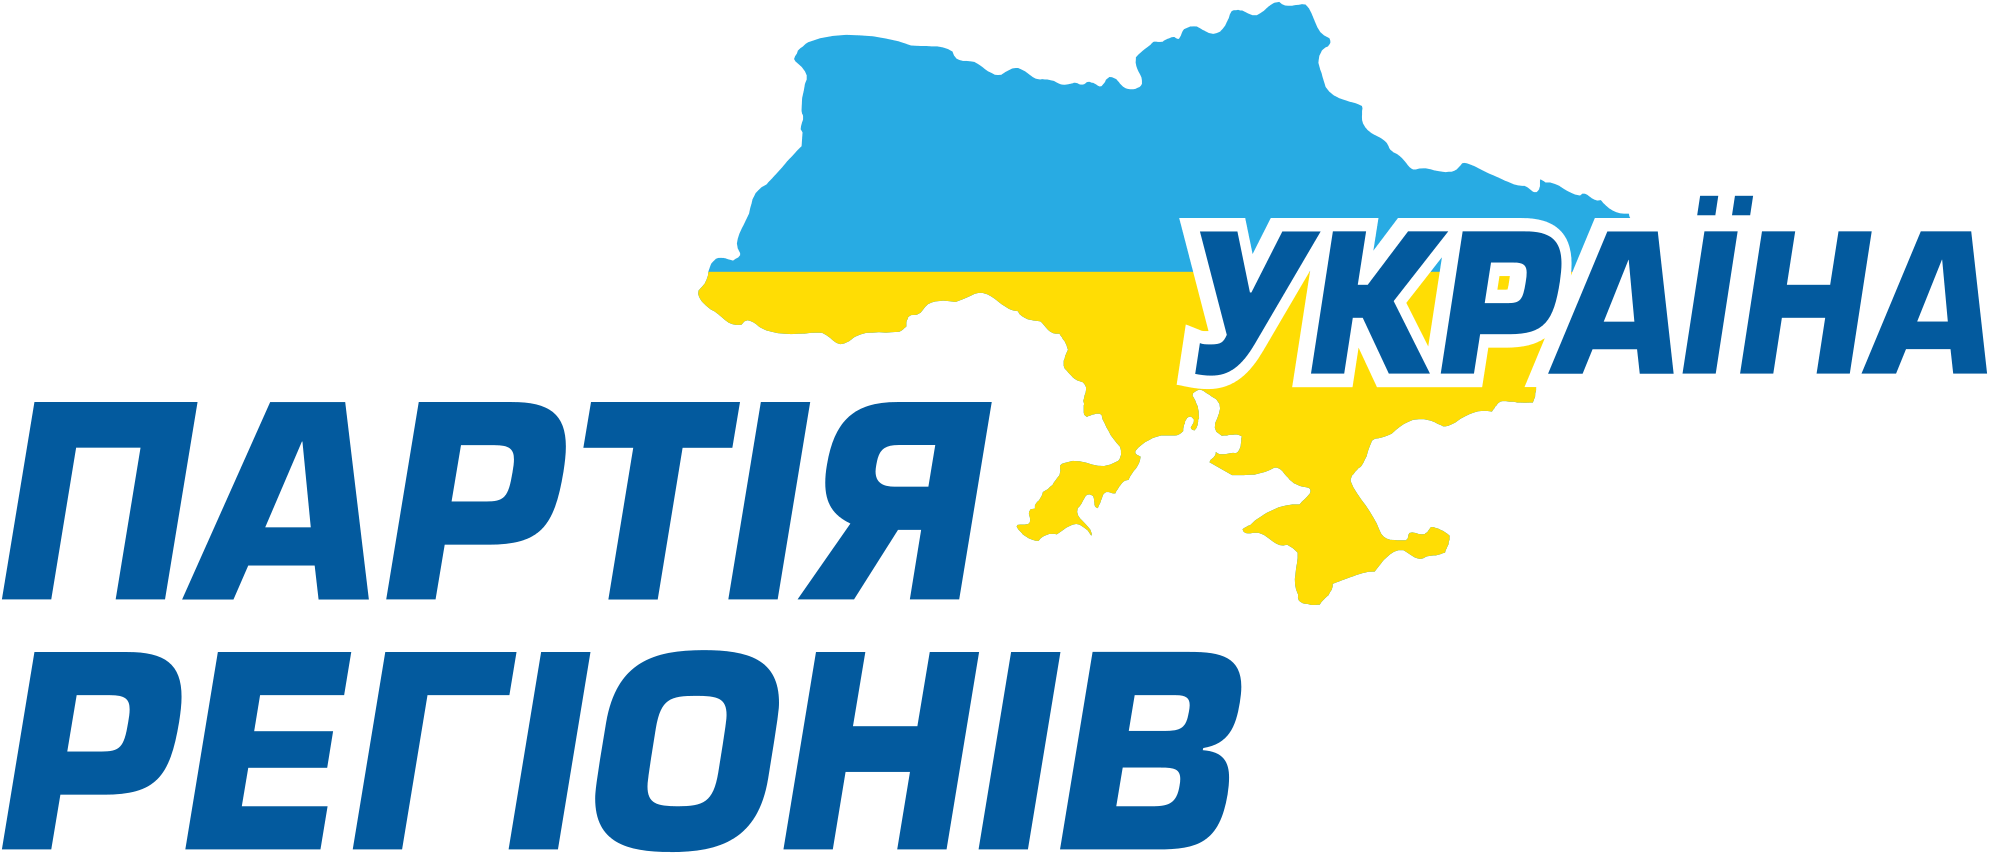 Regions Logo - Party of Regions logo (Ukrainian version).svg